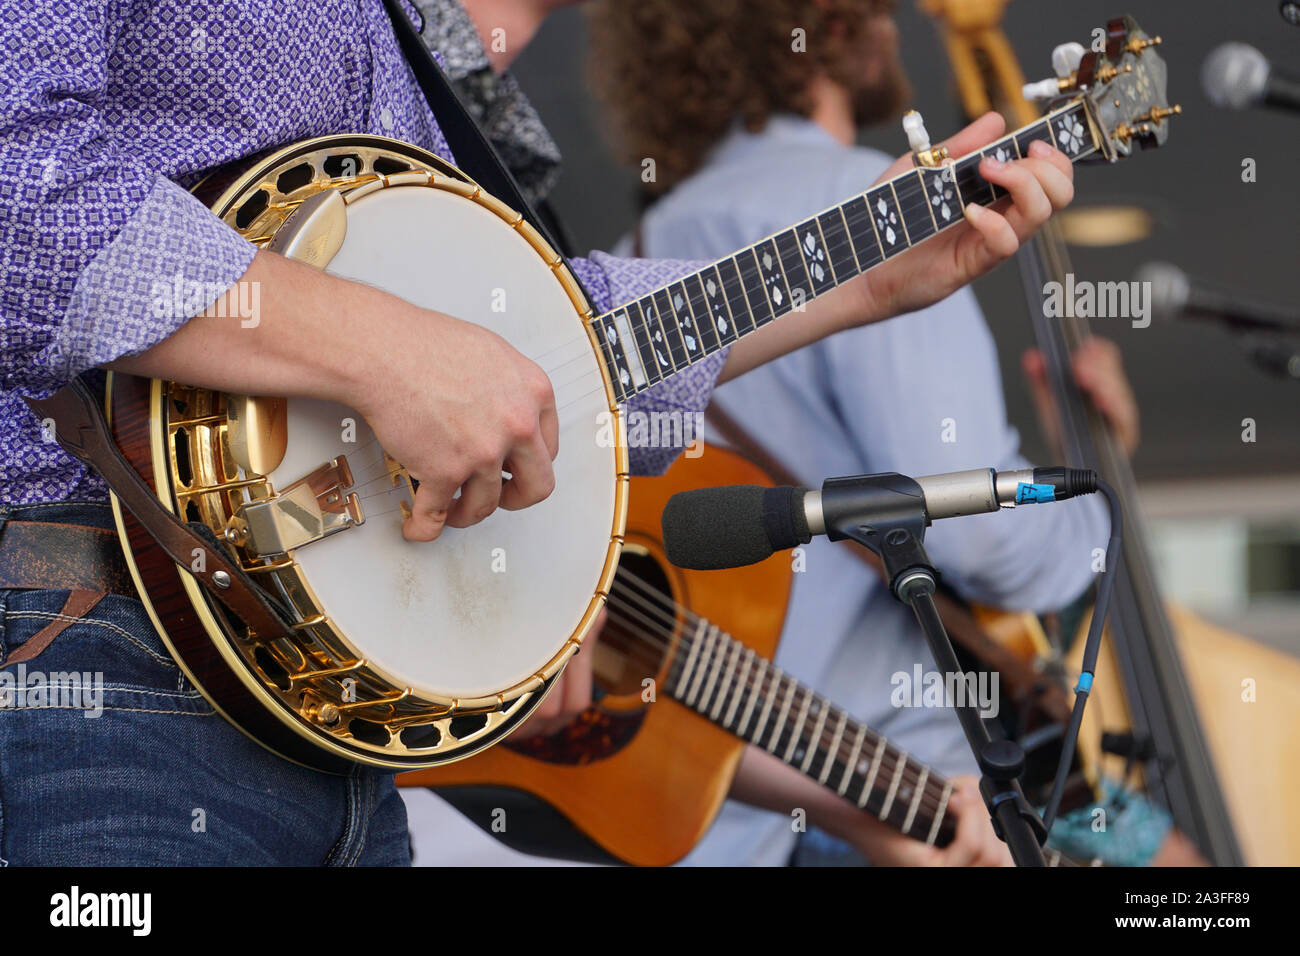 Band banjo immagini e fotografie stock ad alta risoluzione - Alamy